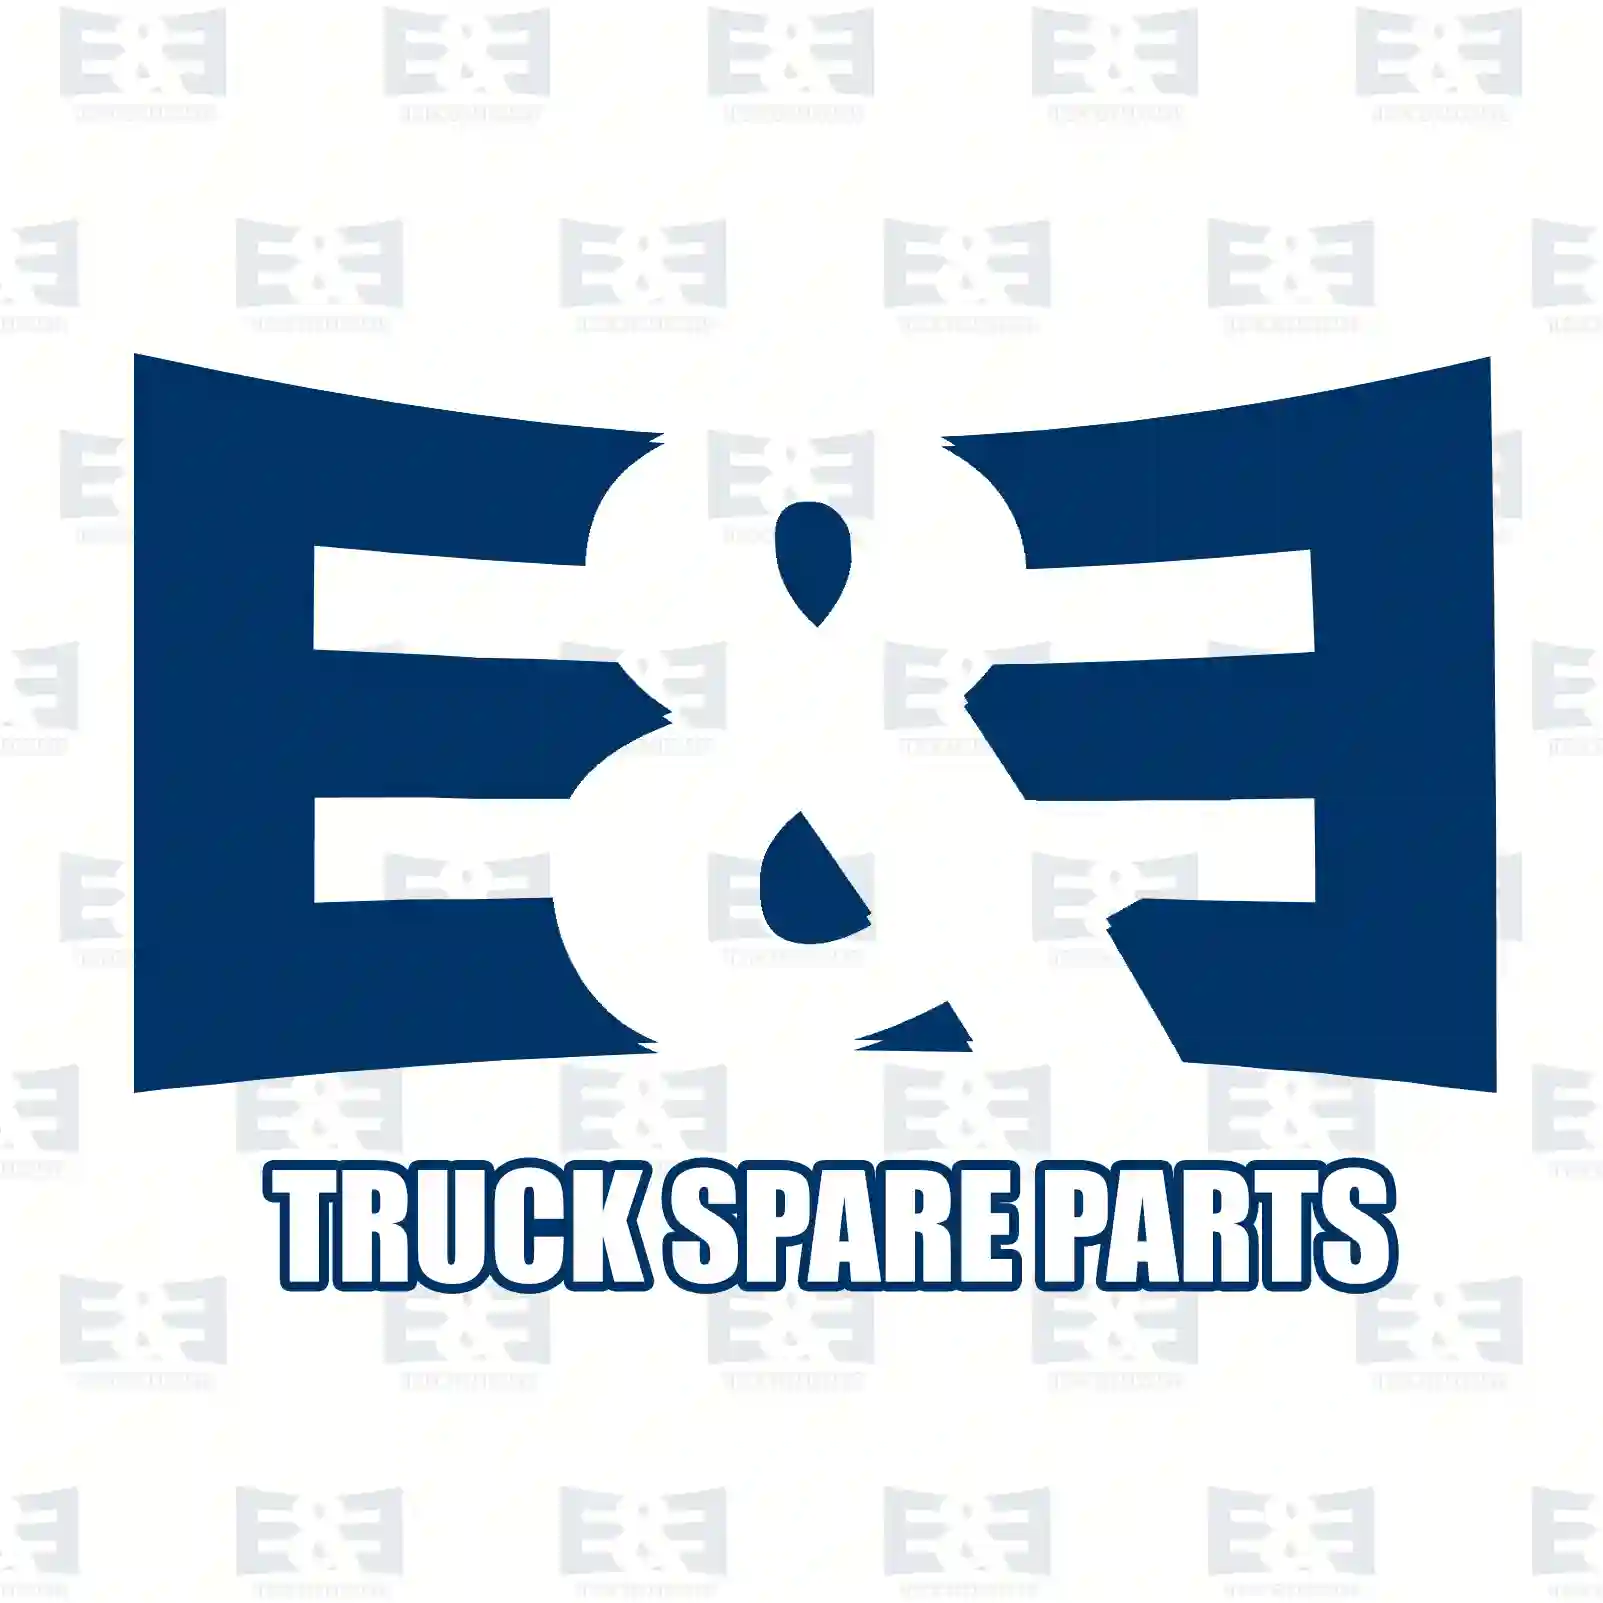 Bell hub, 2E2278137, 3463504109, 94235 ||  2E2278137 E&E Truck Spare Parts | Truck Spare Parts, Auotomotive Spare Parts Bell hub, 2E2278137, 3463504109, 94235 ||  2E2278137 E&E Truck Spare Parts | Truck Spare Parts, Auotomotive Spare Parts